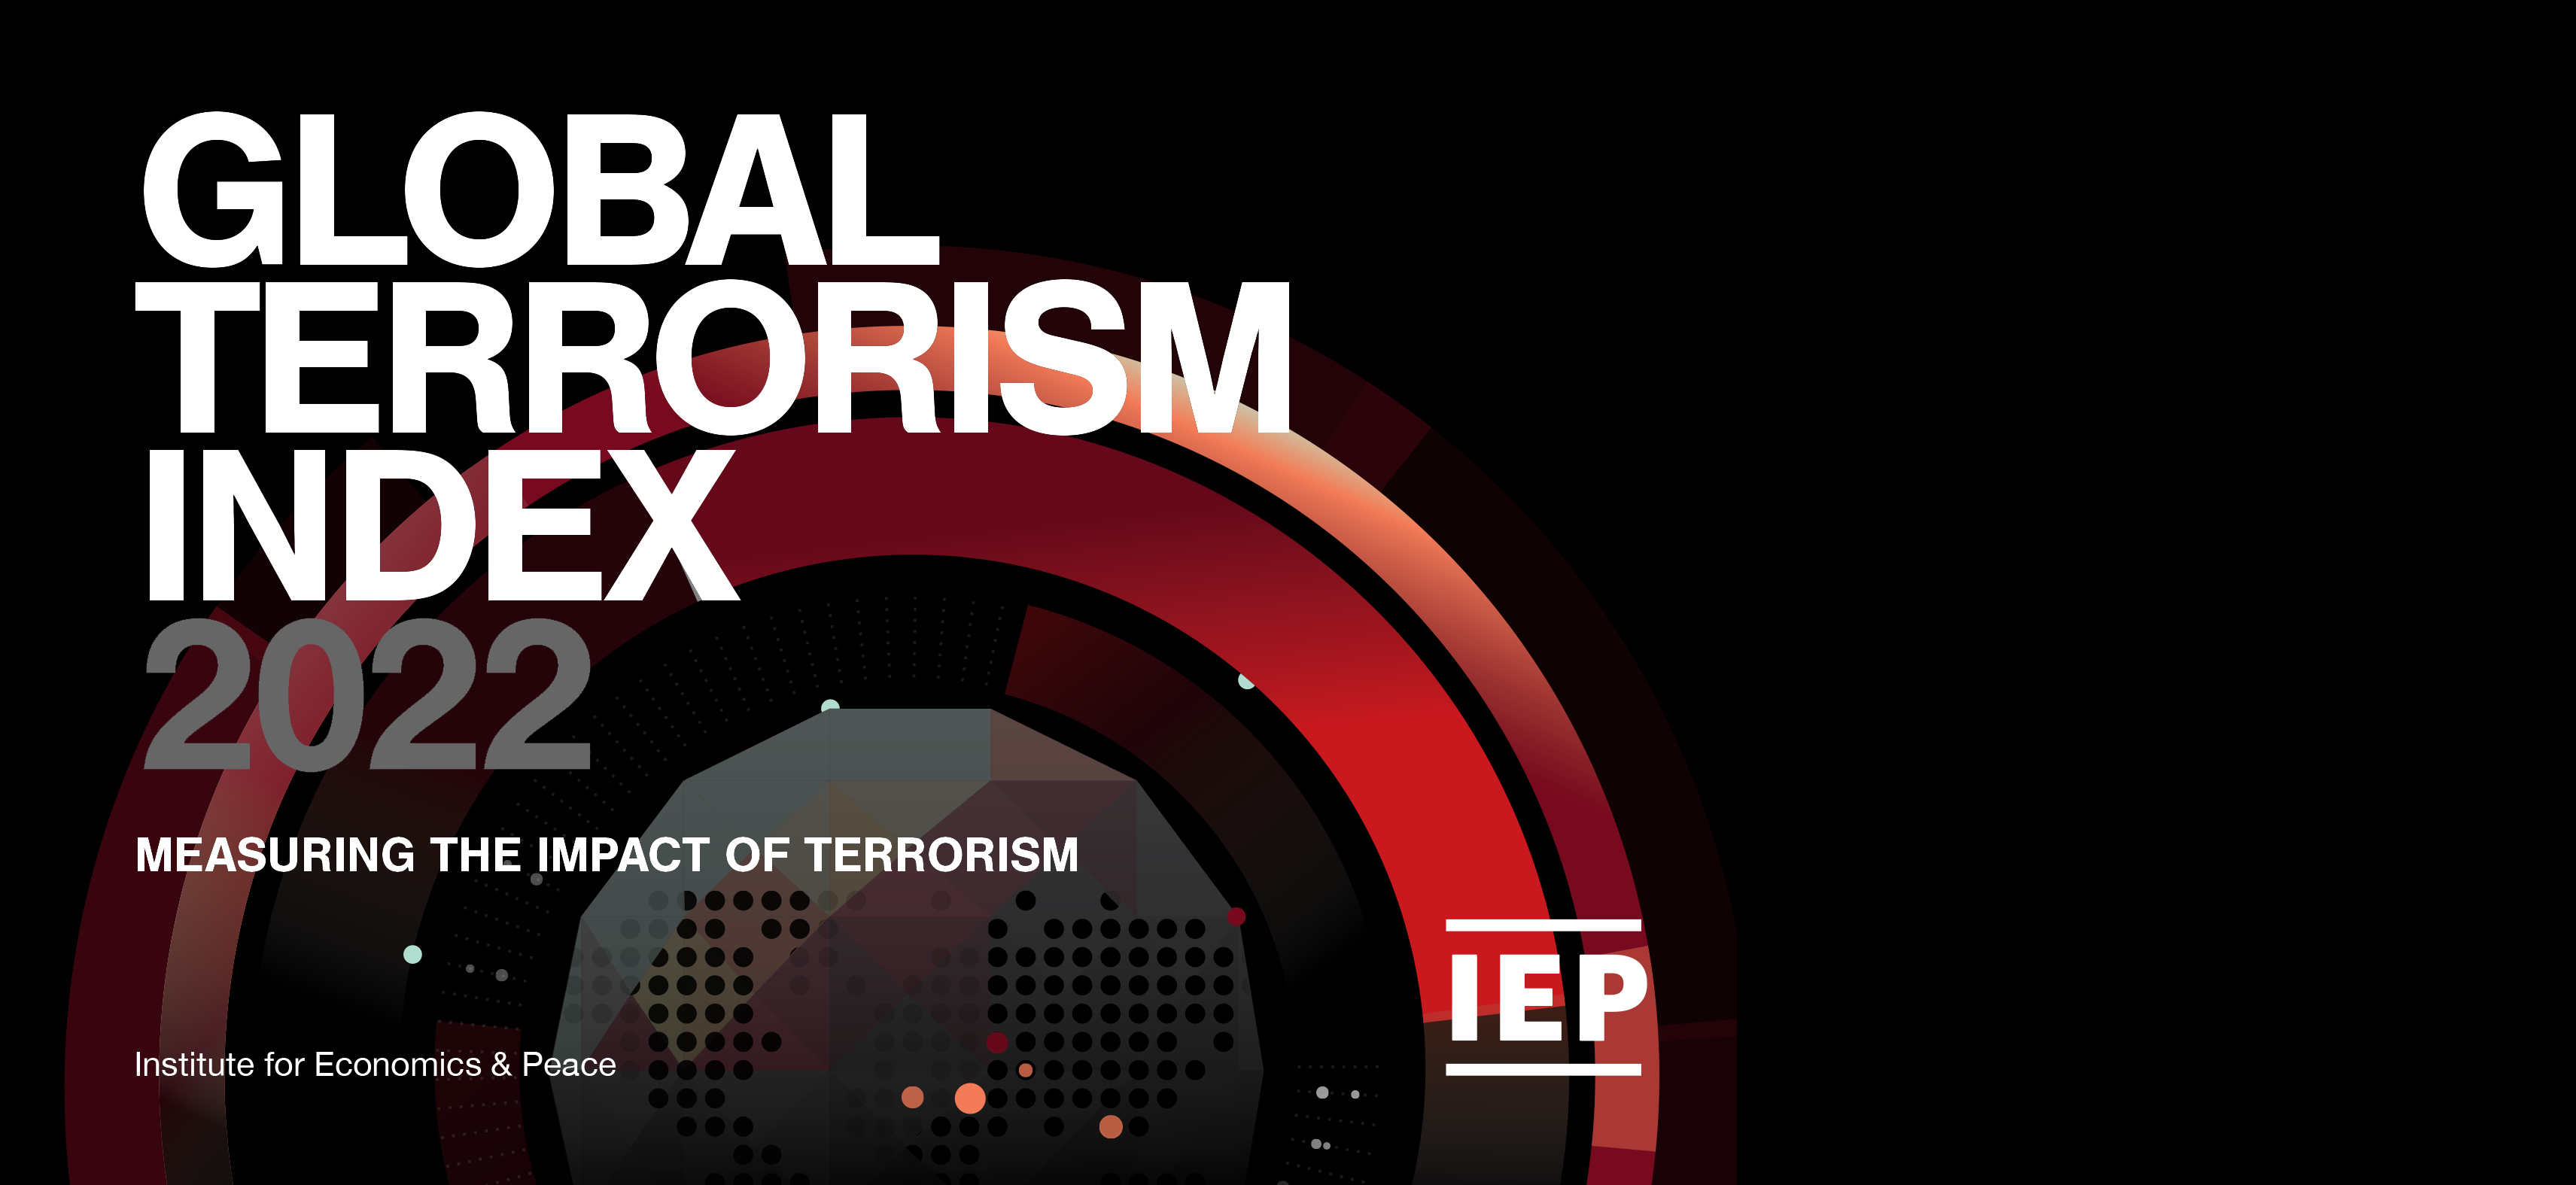 كيف تناول مؤشر الإرهاب العالمي 2022 الأوضاع في الشرق الأوسط؟